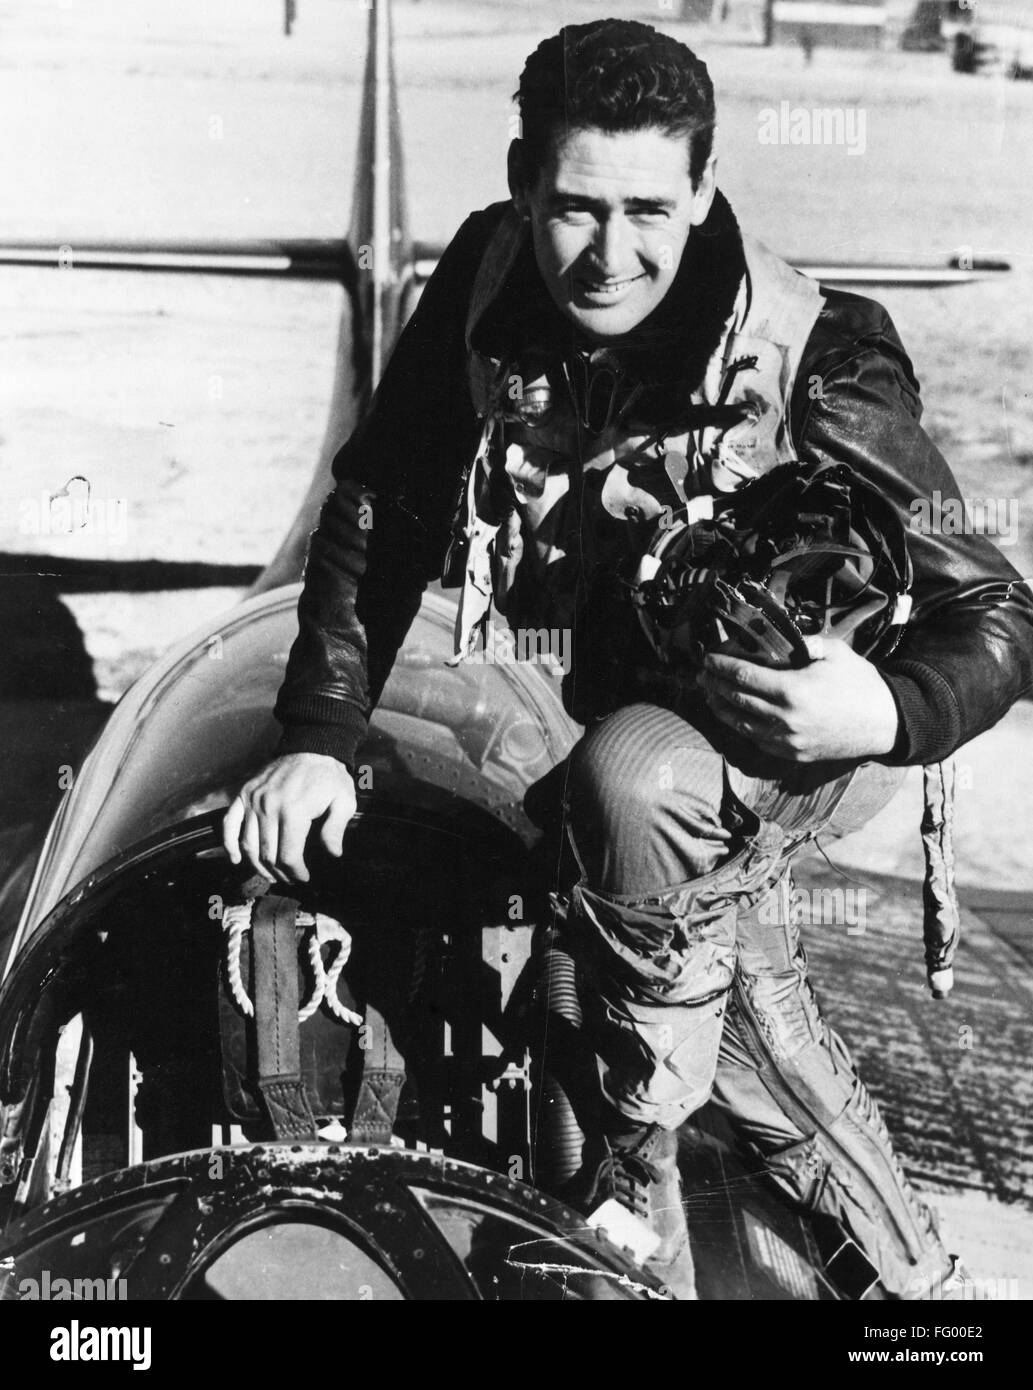 TED WILLIAMS (1918-2002). /nAmerican-Baseball-Spieler. Fotografiert im Cockpit eines Kampfflugzeugs Grumman F9F-6 Panther, während ein Pilot des US Marine Corps während des zweiten Weltkriegs, c1943. Stockfoto